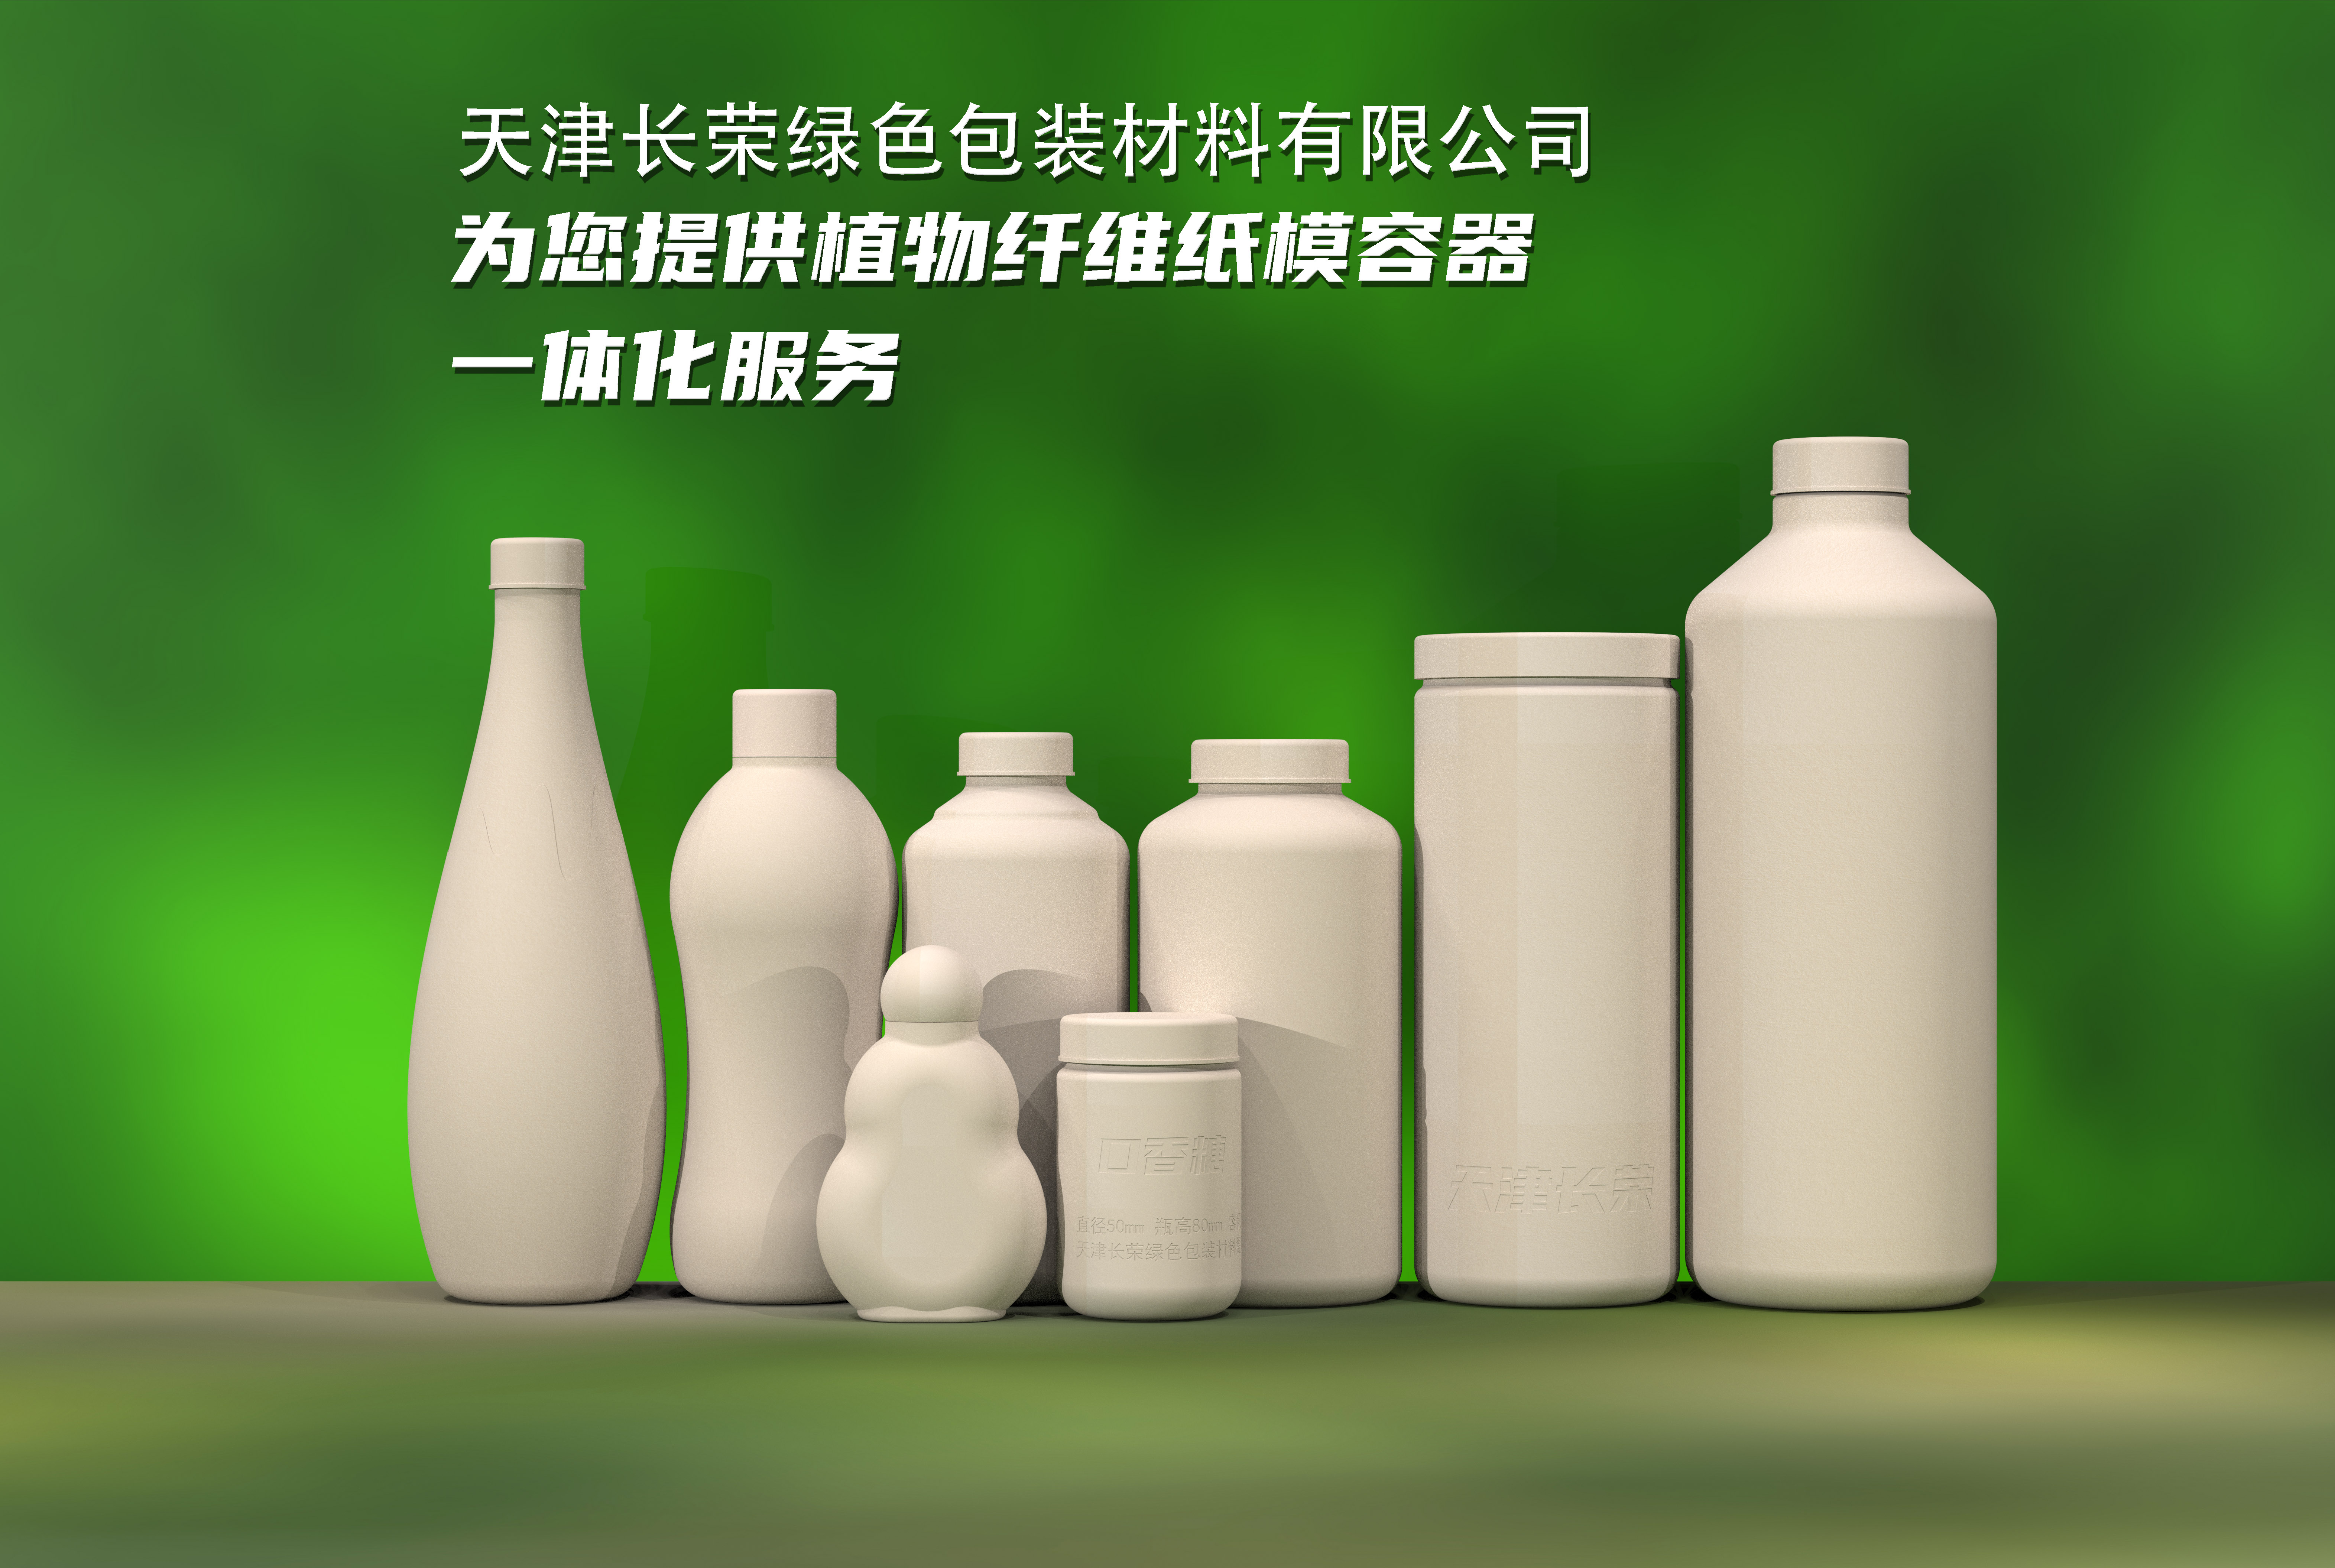 天津长荣绿色包装材料有限公司